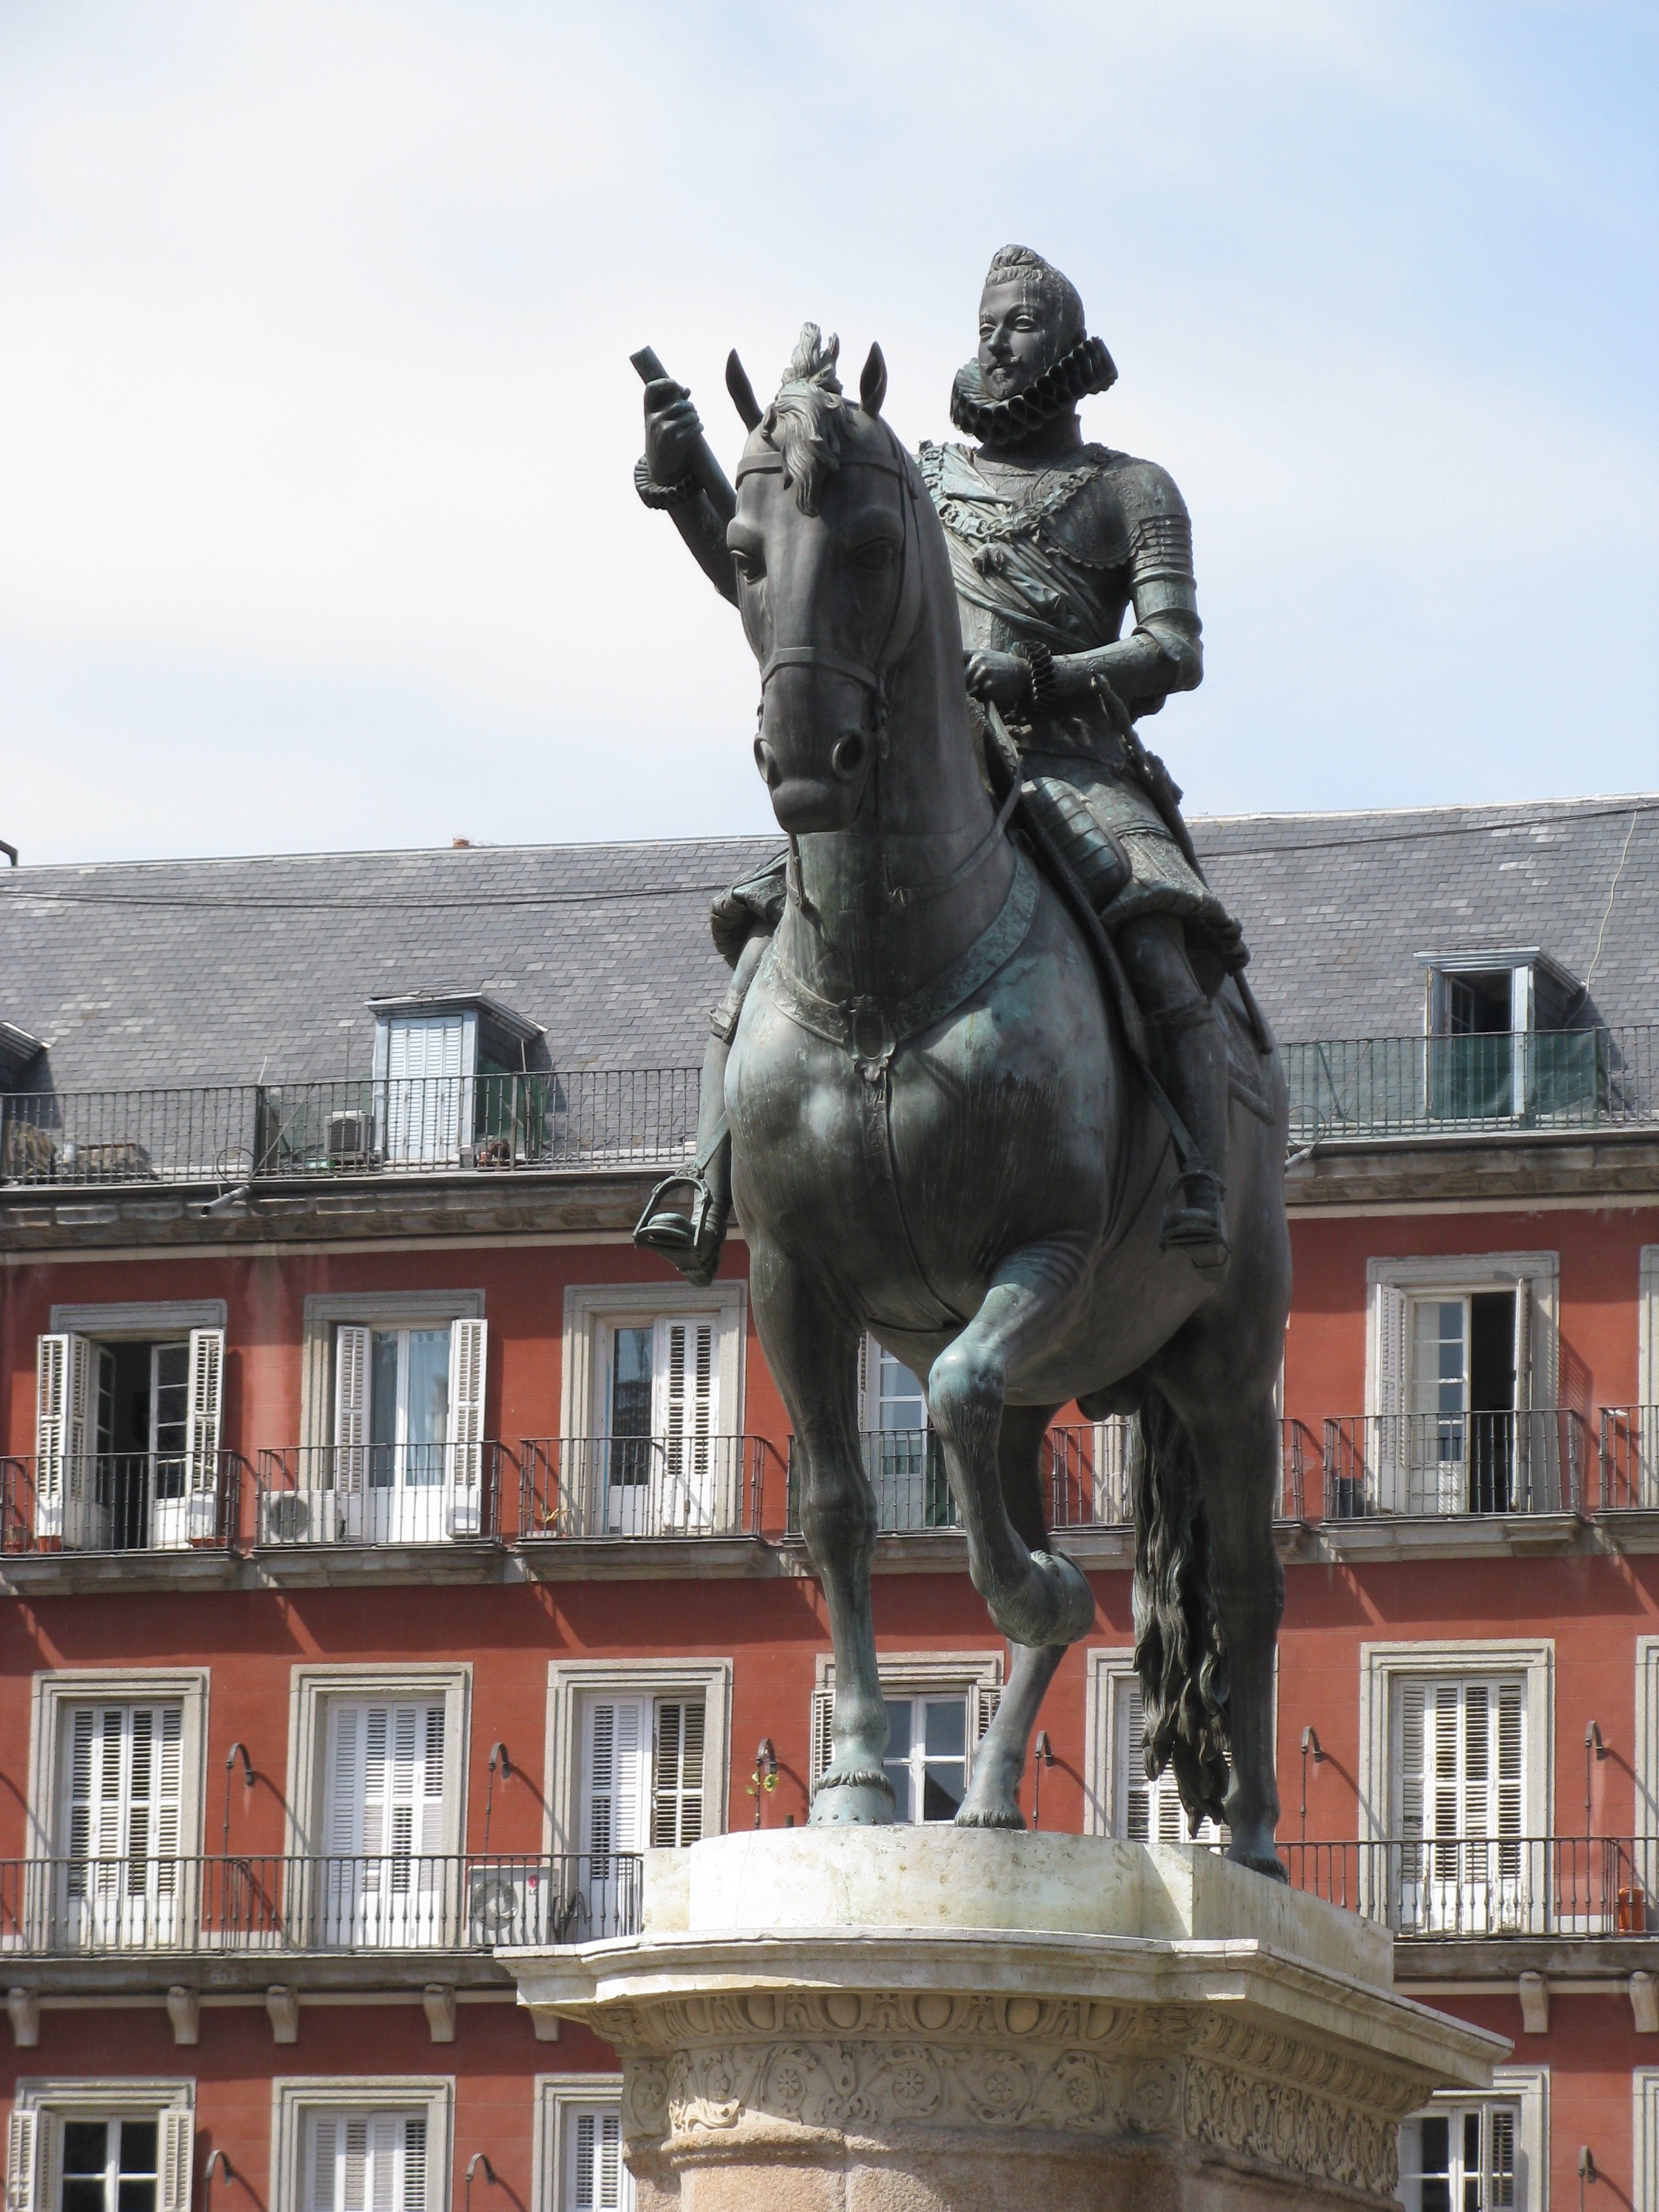 Statue of Philip III on horseback